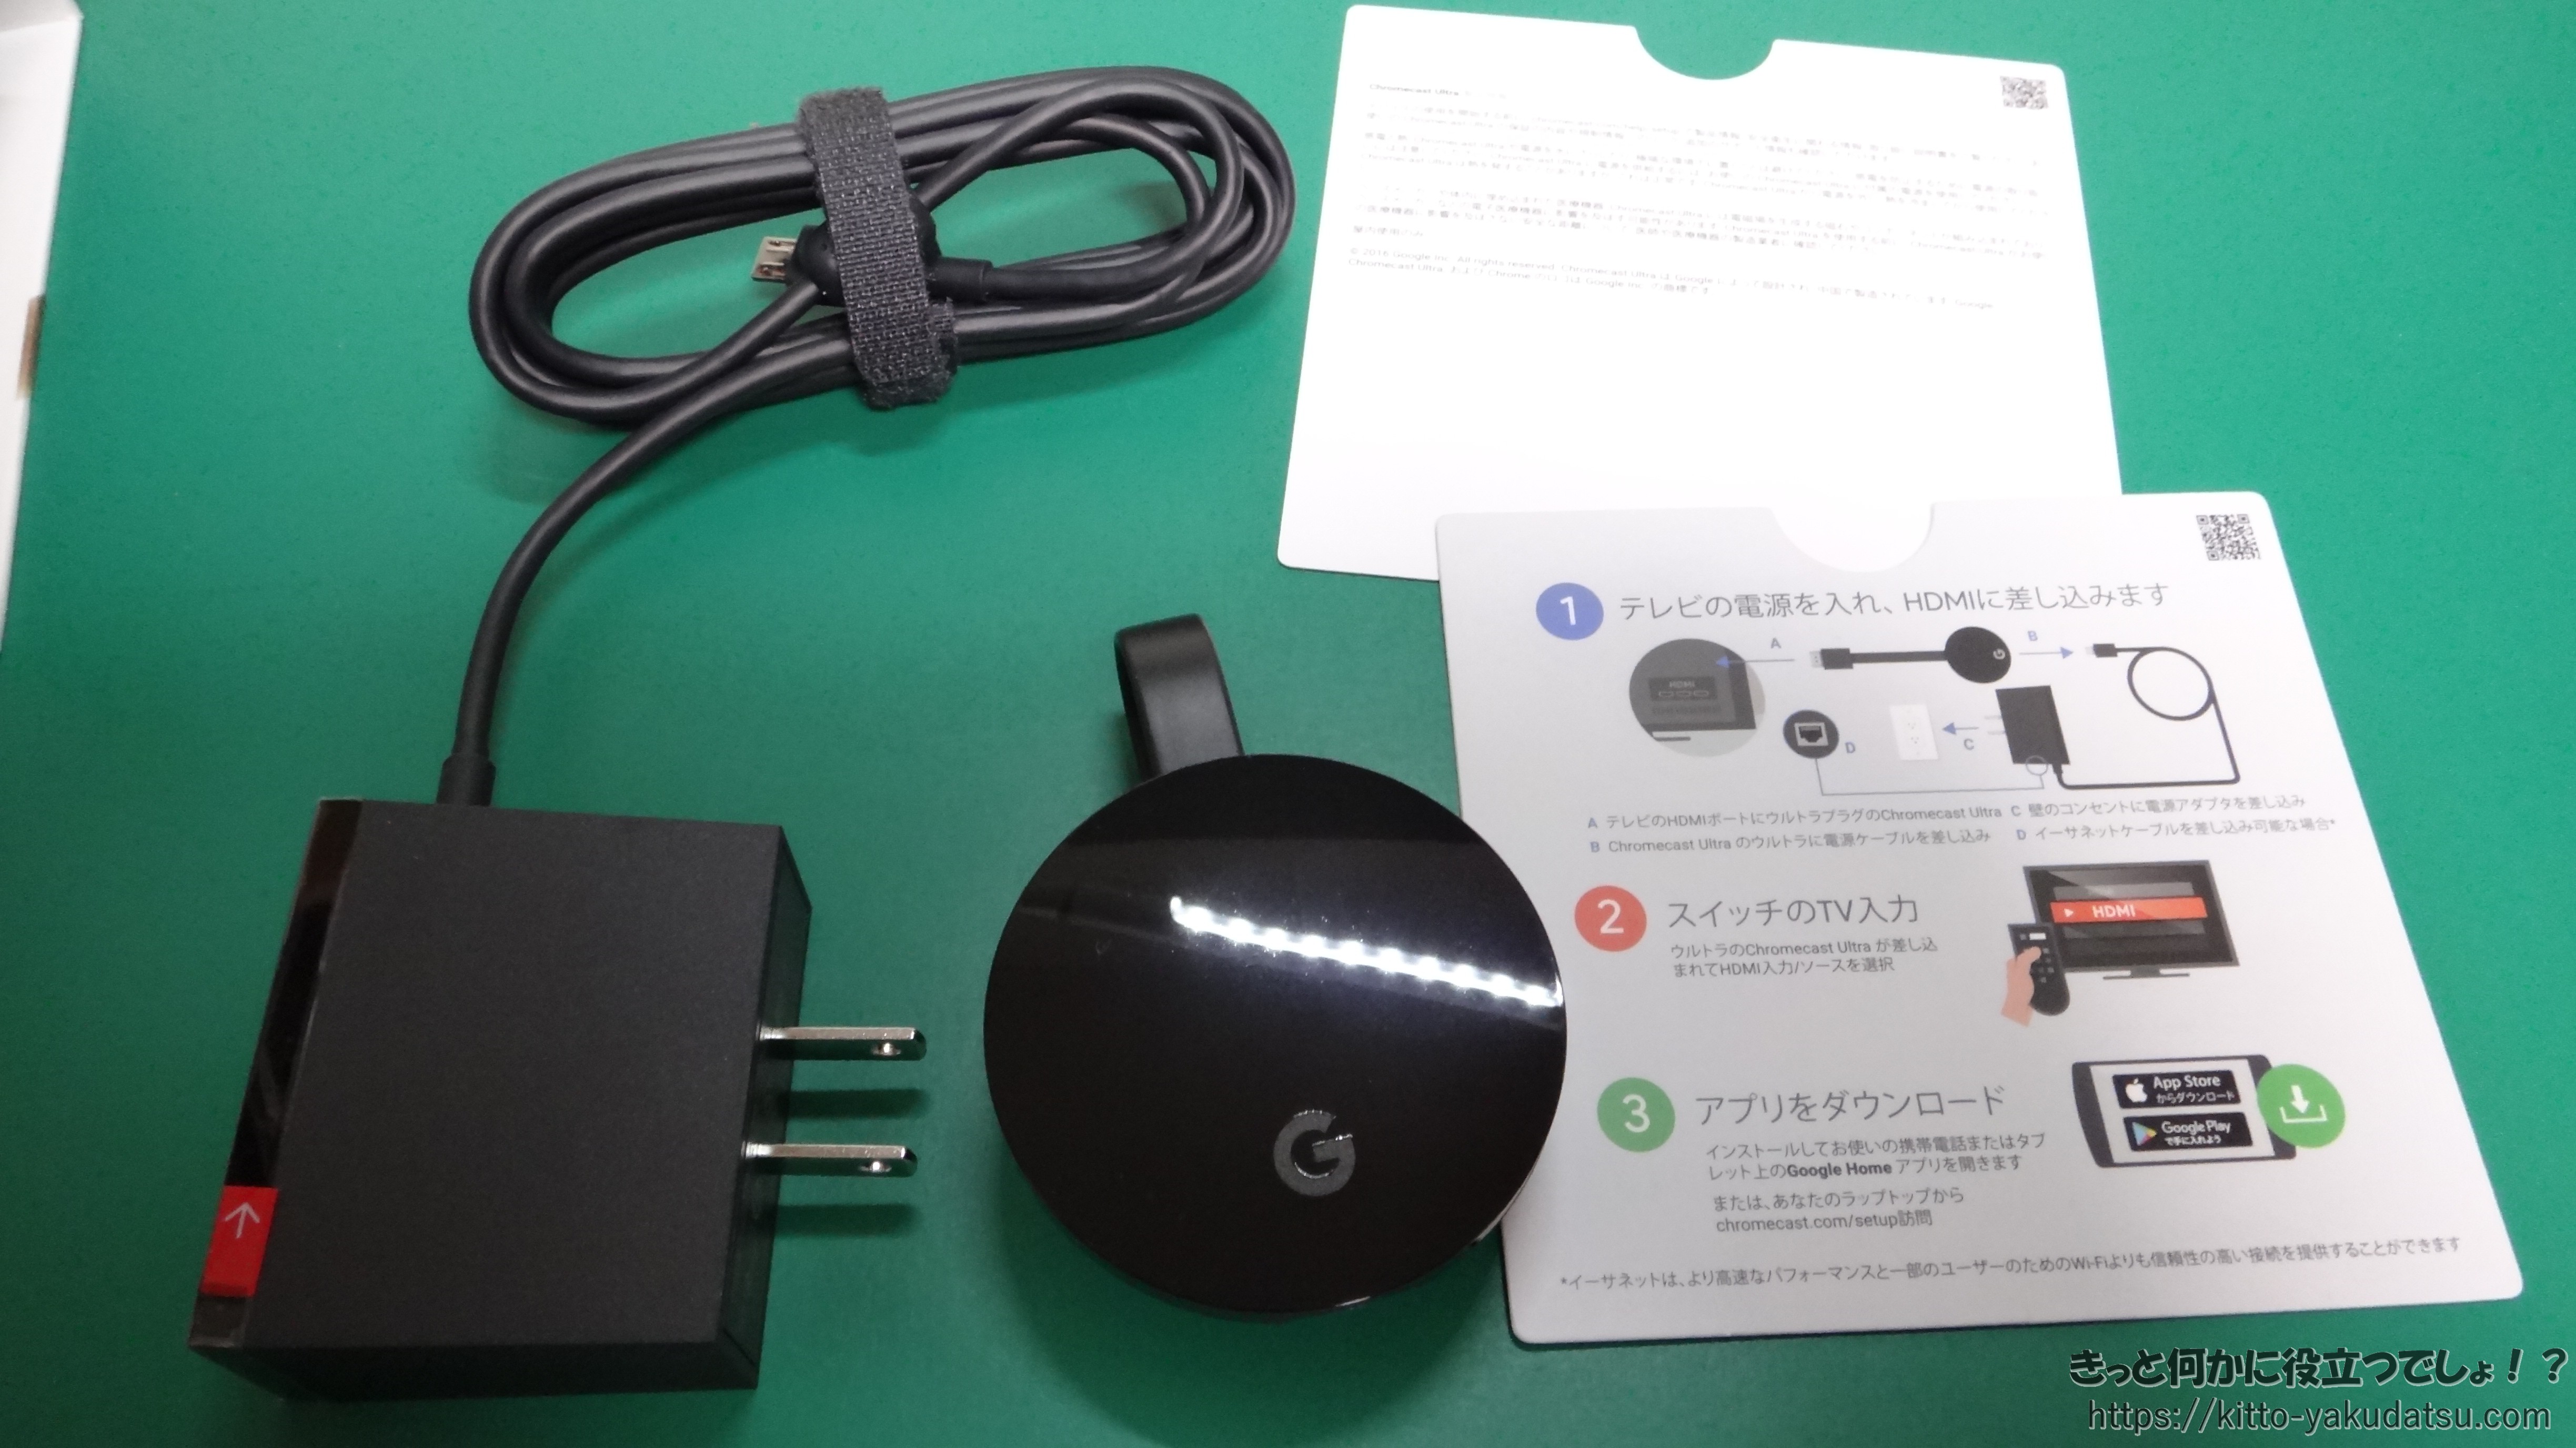 (未使用品) Google Chromecast Ultra  クロムキャスト